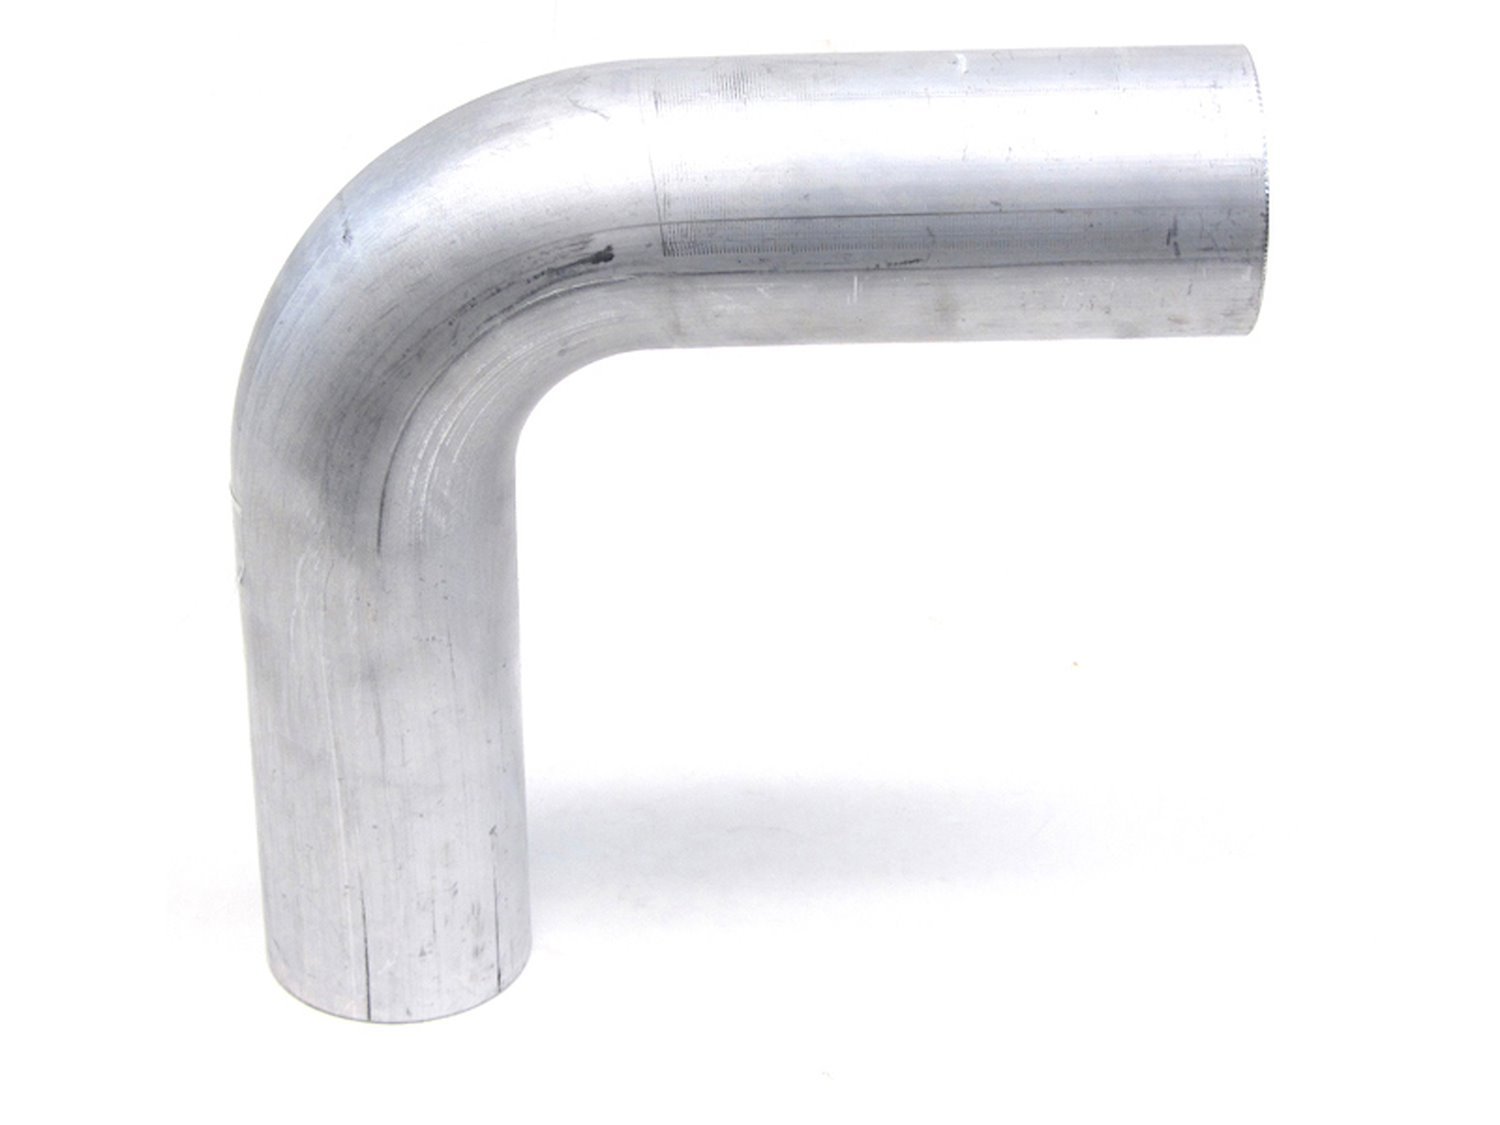 AT90-450-CLR-6 Aluminum Elbow Tube, 6061 Aluminum, 90-Degree Bend Elbow Tubing, 4-1/2 in. OD, Tight Radius, 6 in. CLR